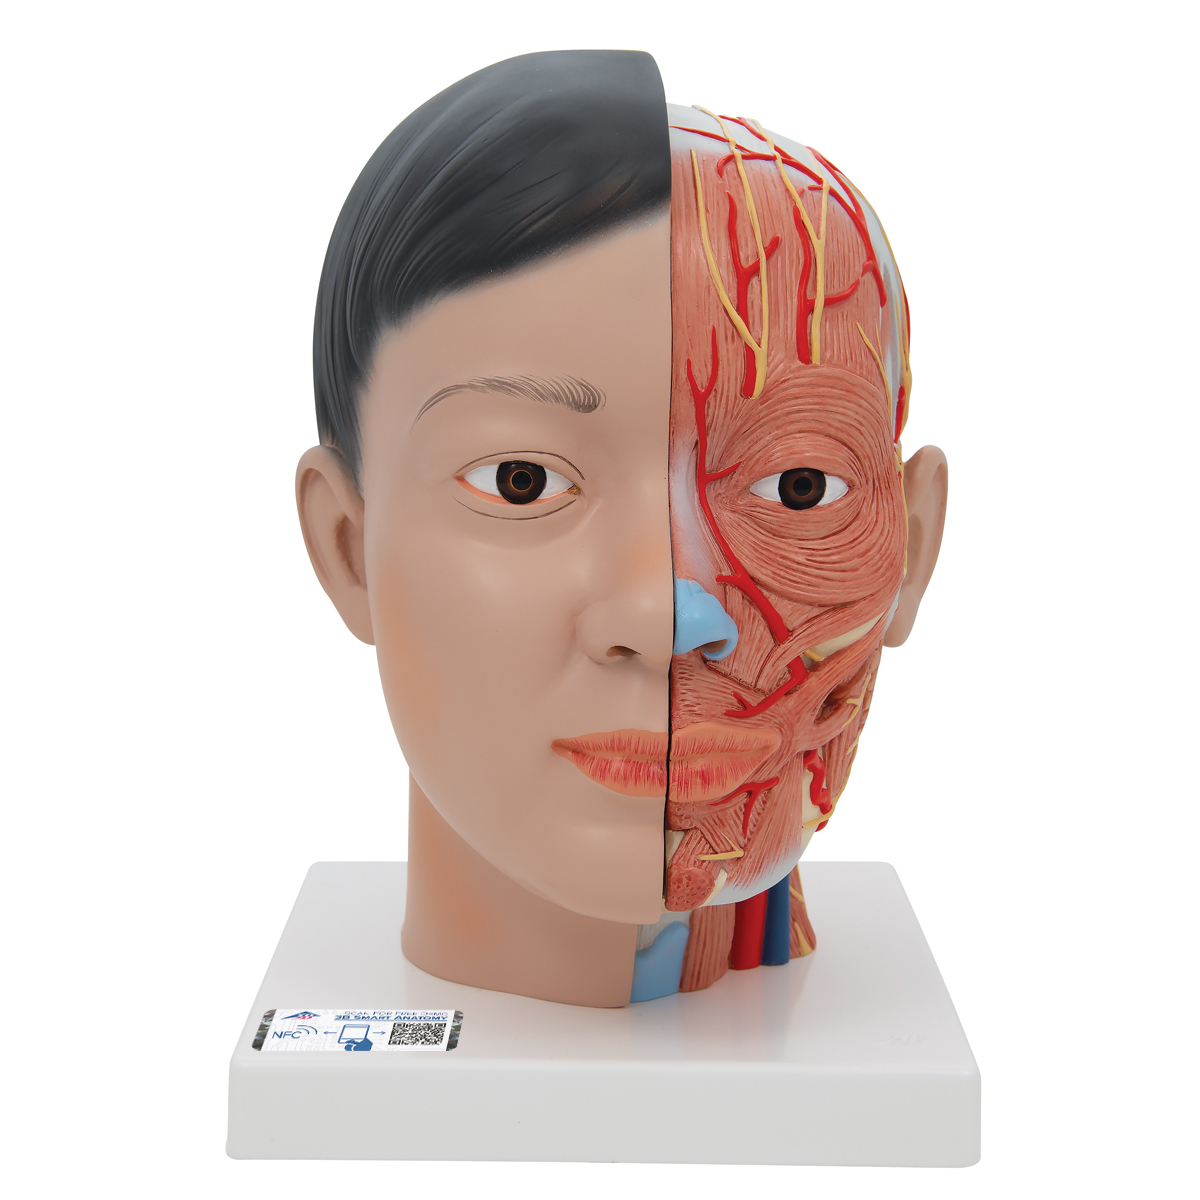 Lebensgroßes, asiatisches Kopfmodell mit Gehirn & Hals, 4-teilig - 3B Smart Anatomy, Bestellnummer 1000215, C06, 3B Scientific